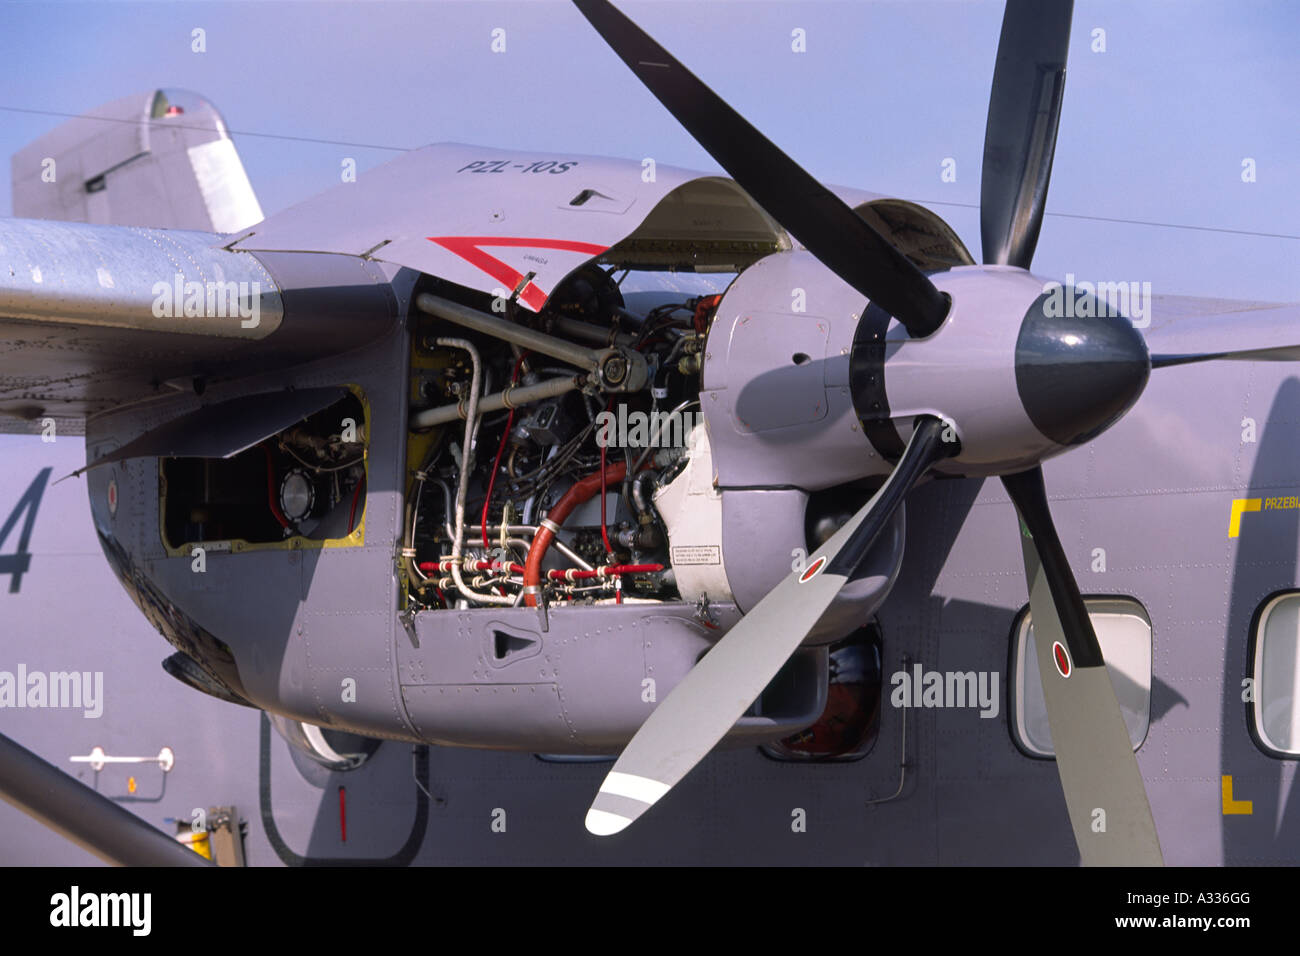 pratt-whitney-pt6a-65bpzl-turboprop-engine-hartzell-propeller-blades-A336GG.jpg